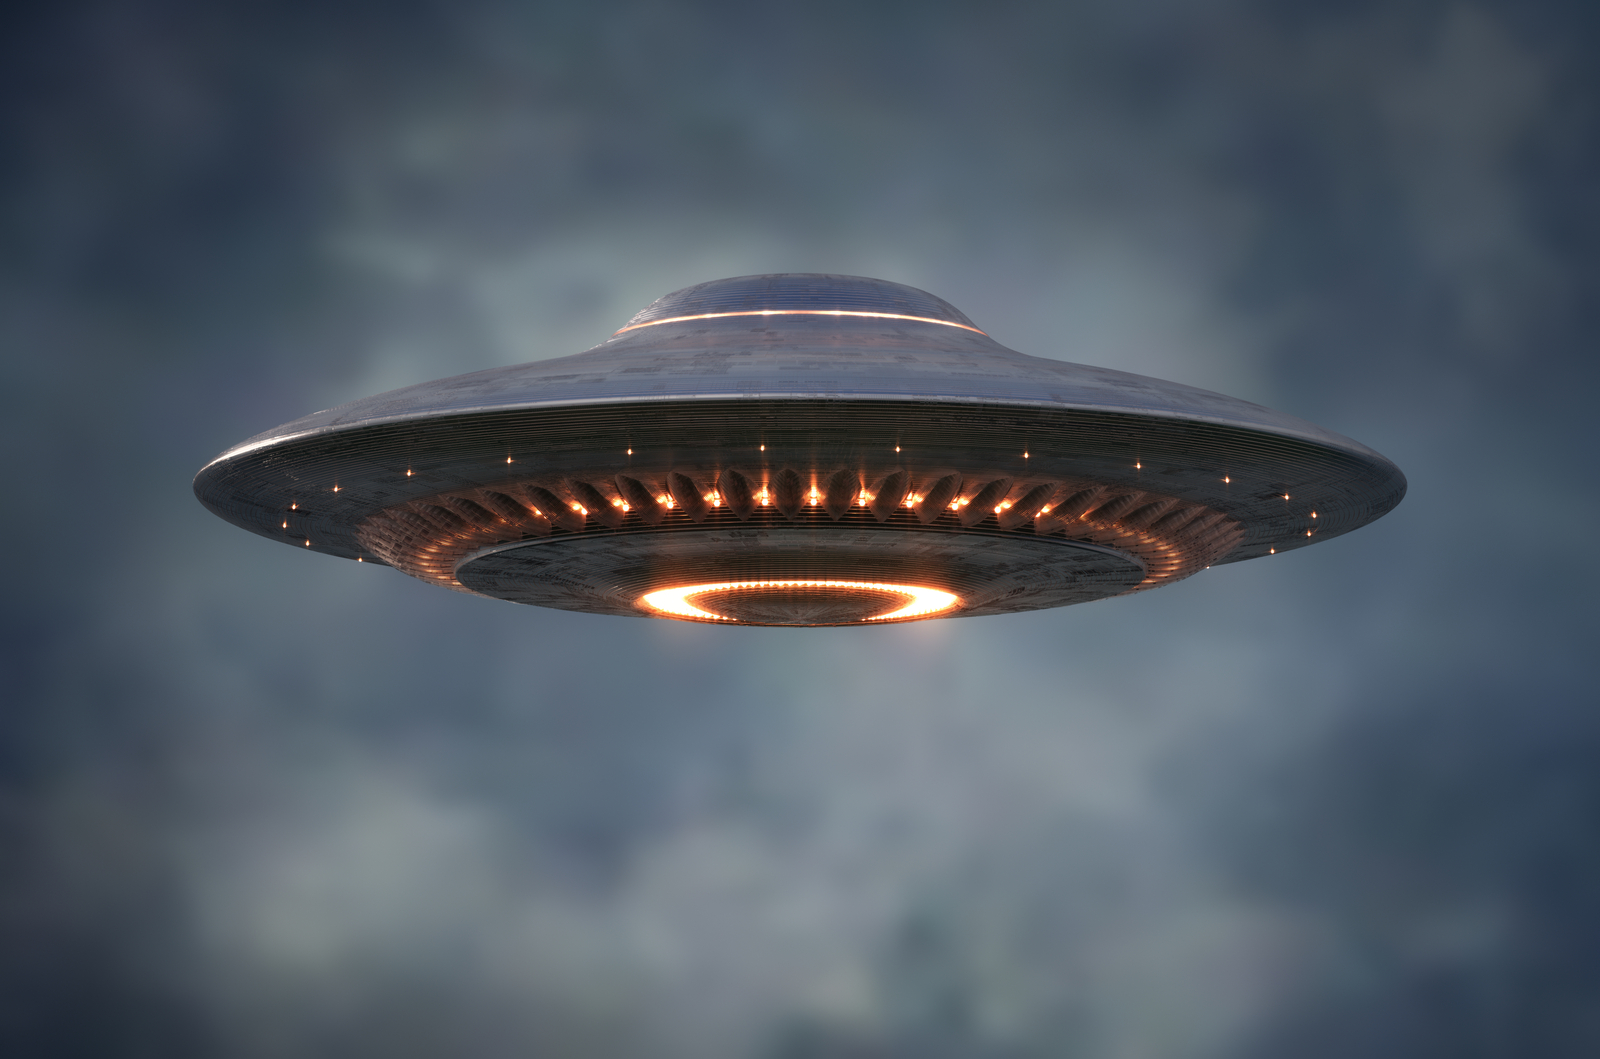 Visitante silencioso: La cámara del timbre captura un OVNI (UFO) deslizándose misteriosamente más allá de las casas de Missouri, dejando a los espectadores maravillados y con un sentimiento de asombro.